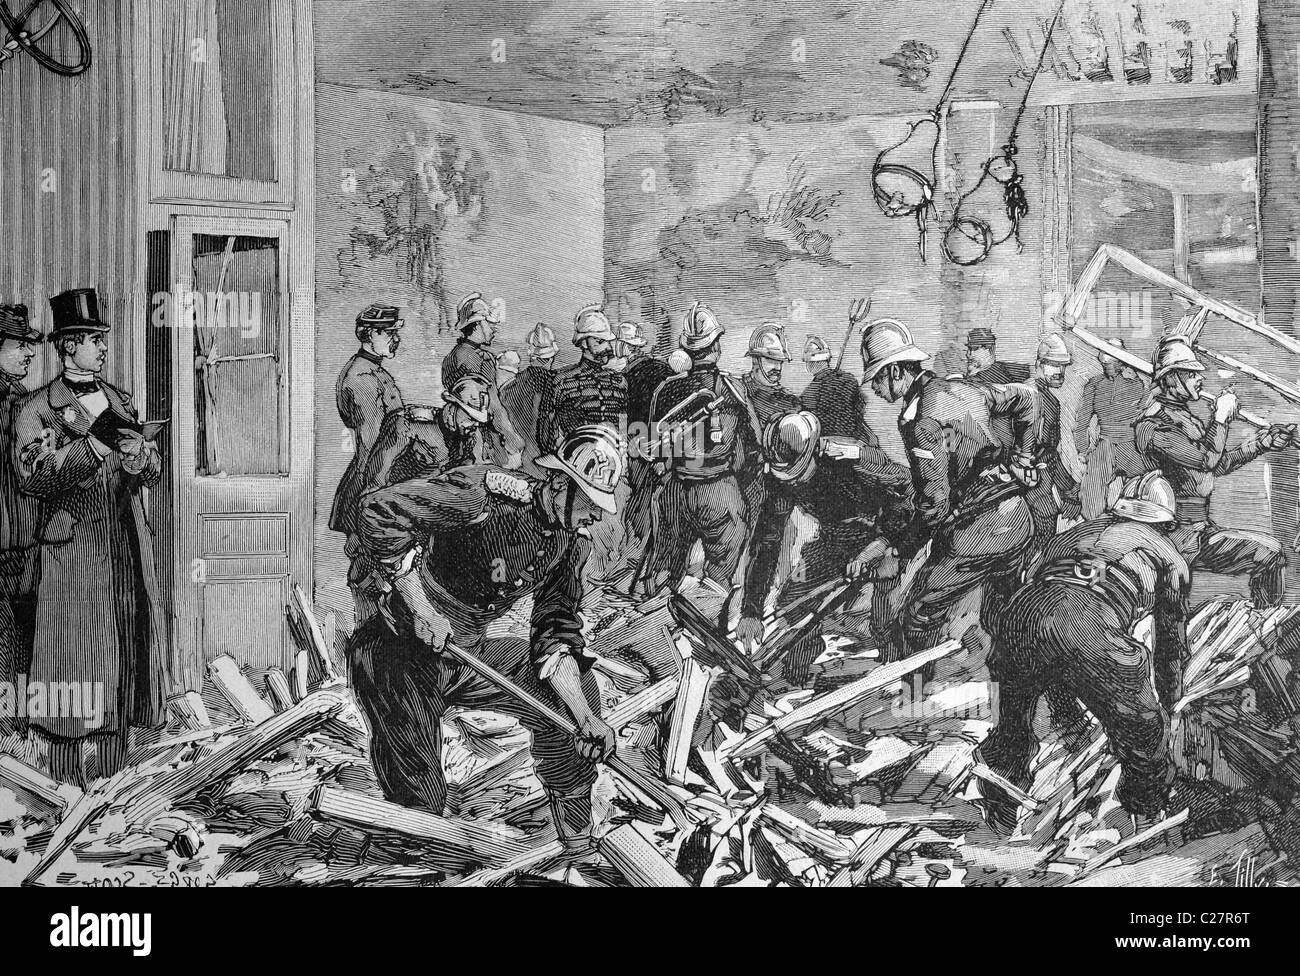 Los comisarios de policía tras una explosión de dinamita en París, Francia, la ilustración histórica, ca. 1893 Foto de stock